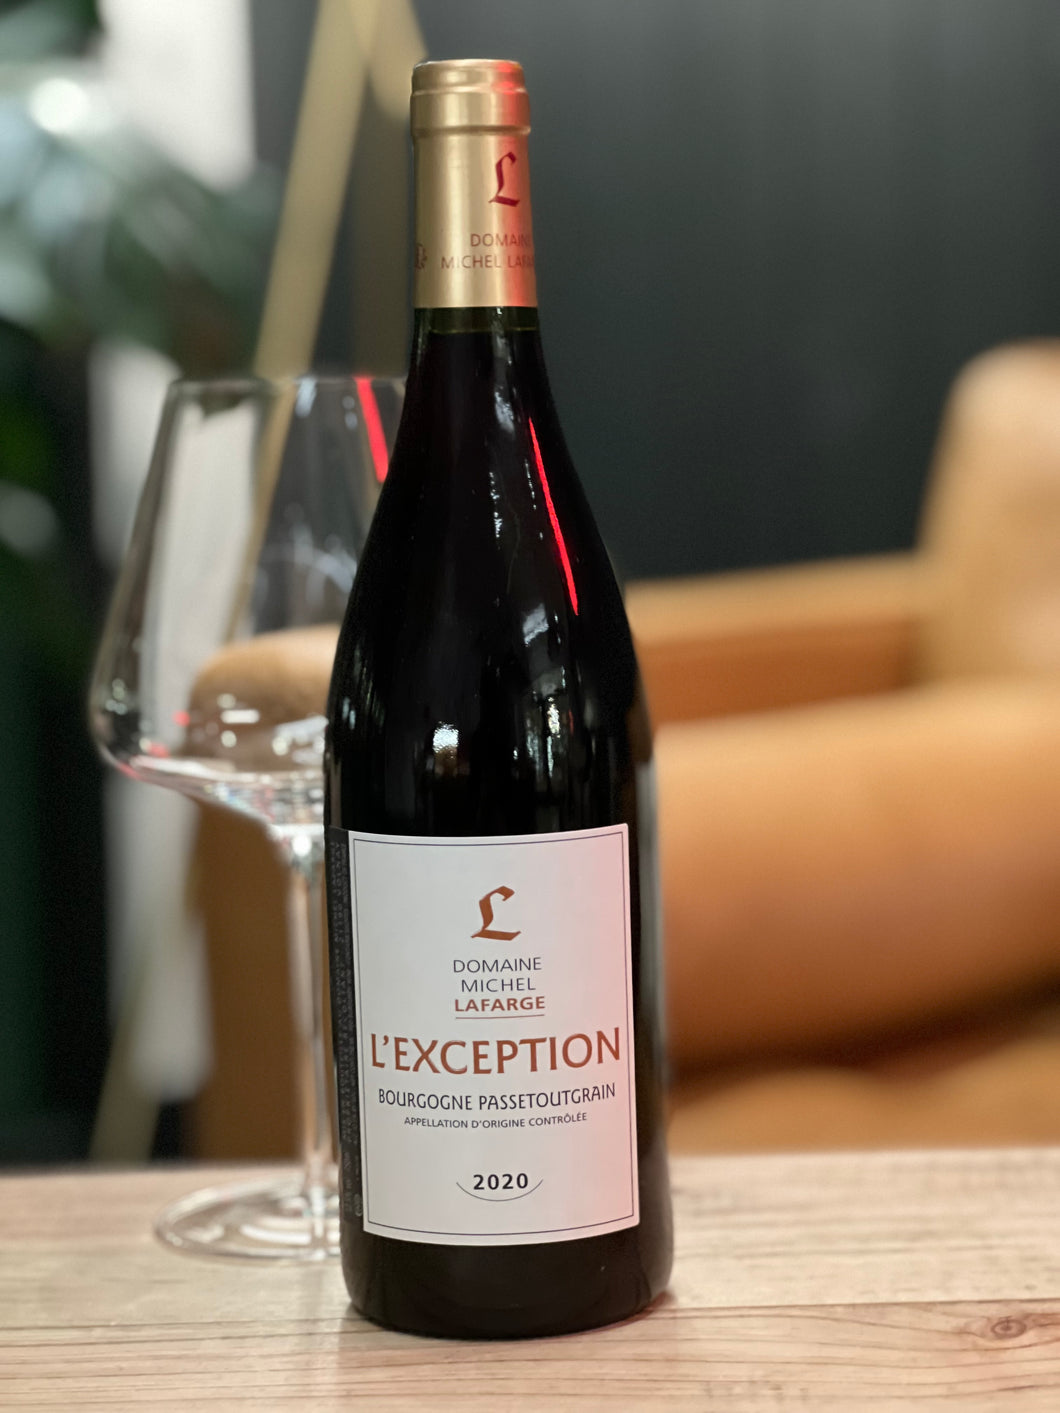 Bourgogne Passetoutgrain, Michel Lafarge “L’Exception” 2020